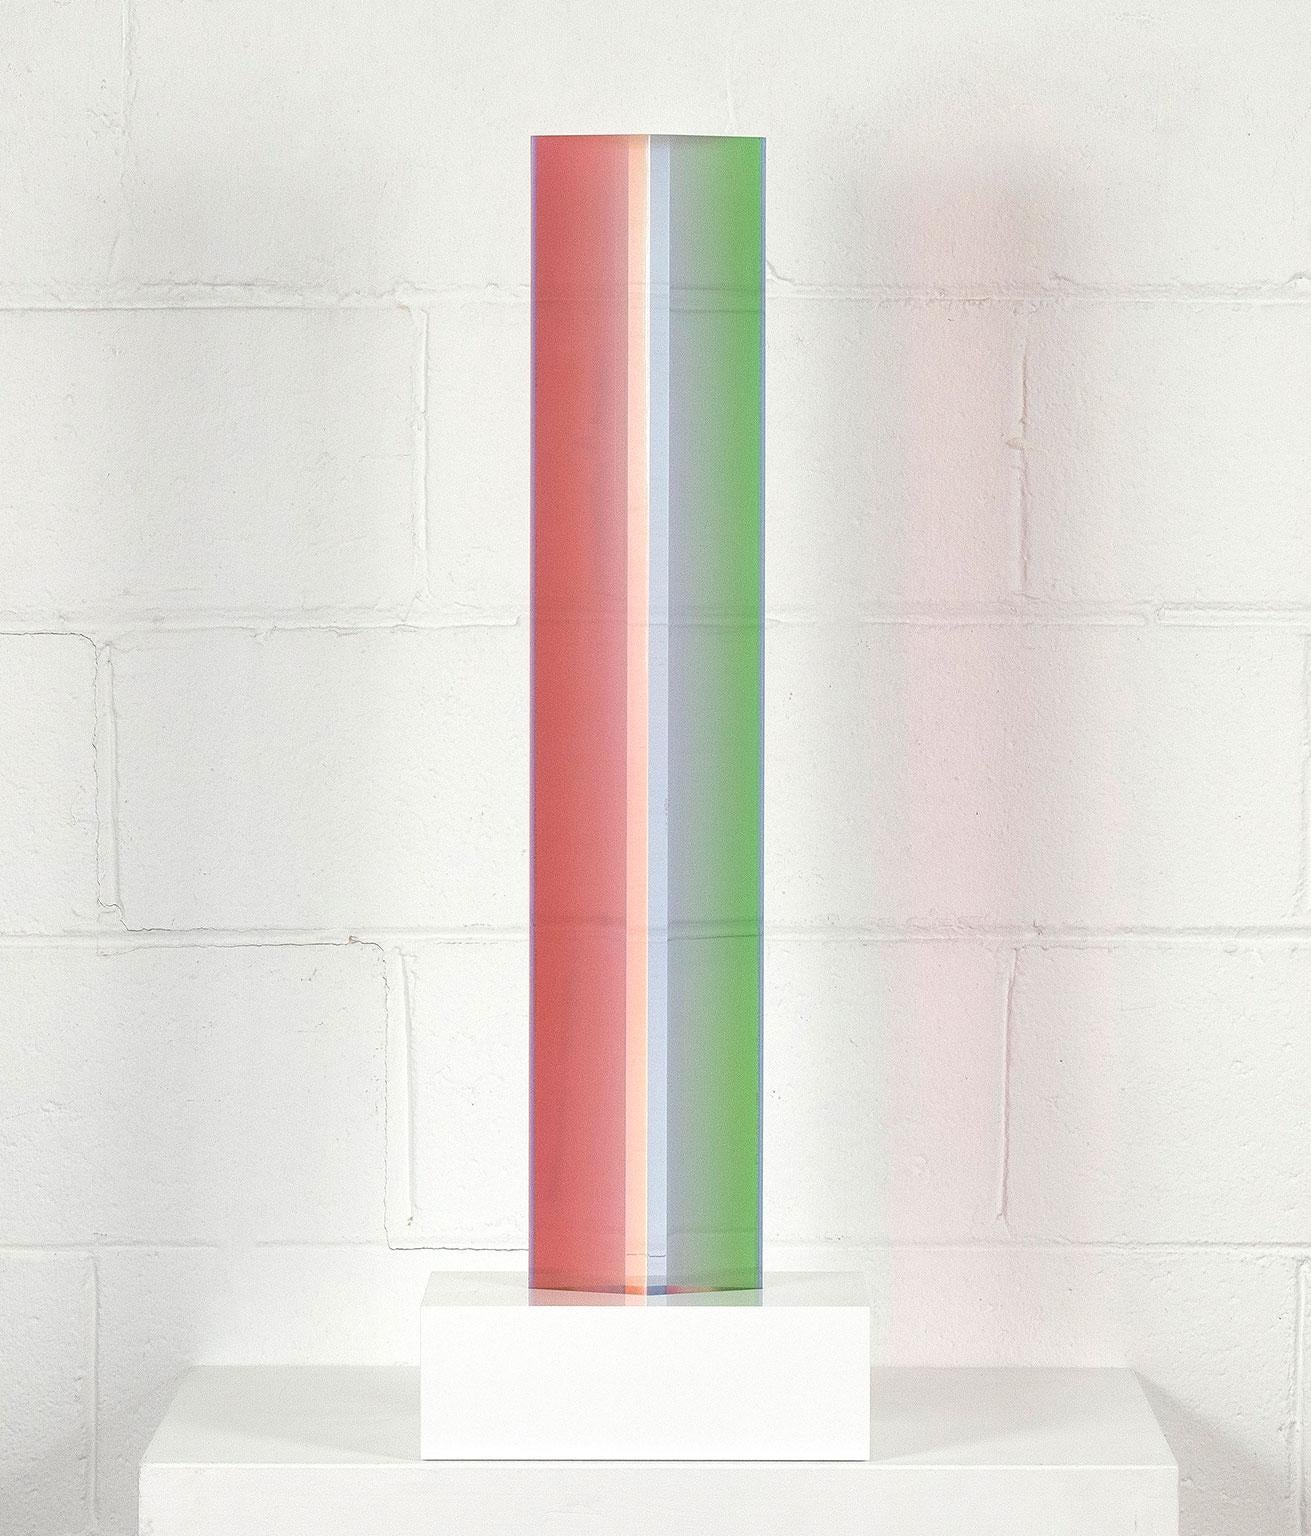 Vasa Velizar Mihich Abstract Sculpture - Vasa Mihich "Rainbow Parallelogram XL", 1977